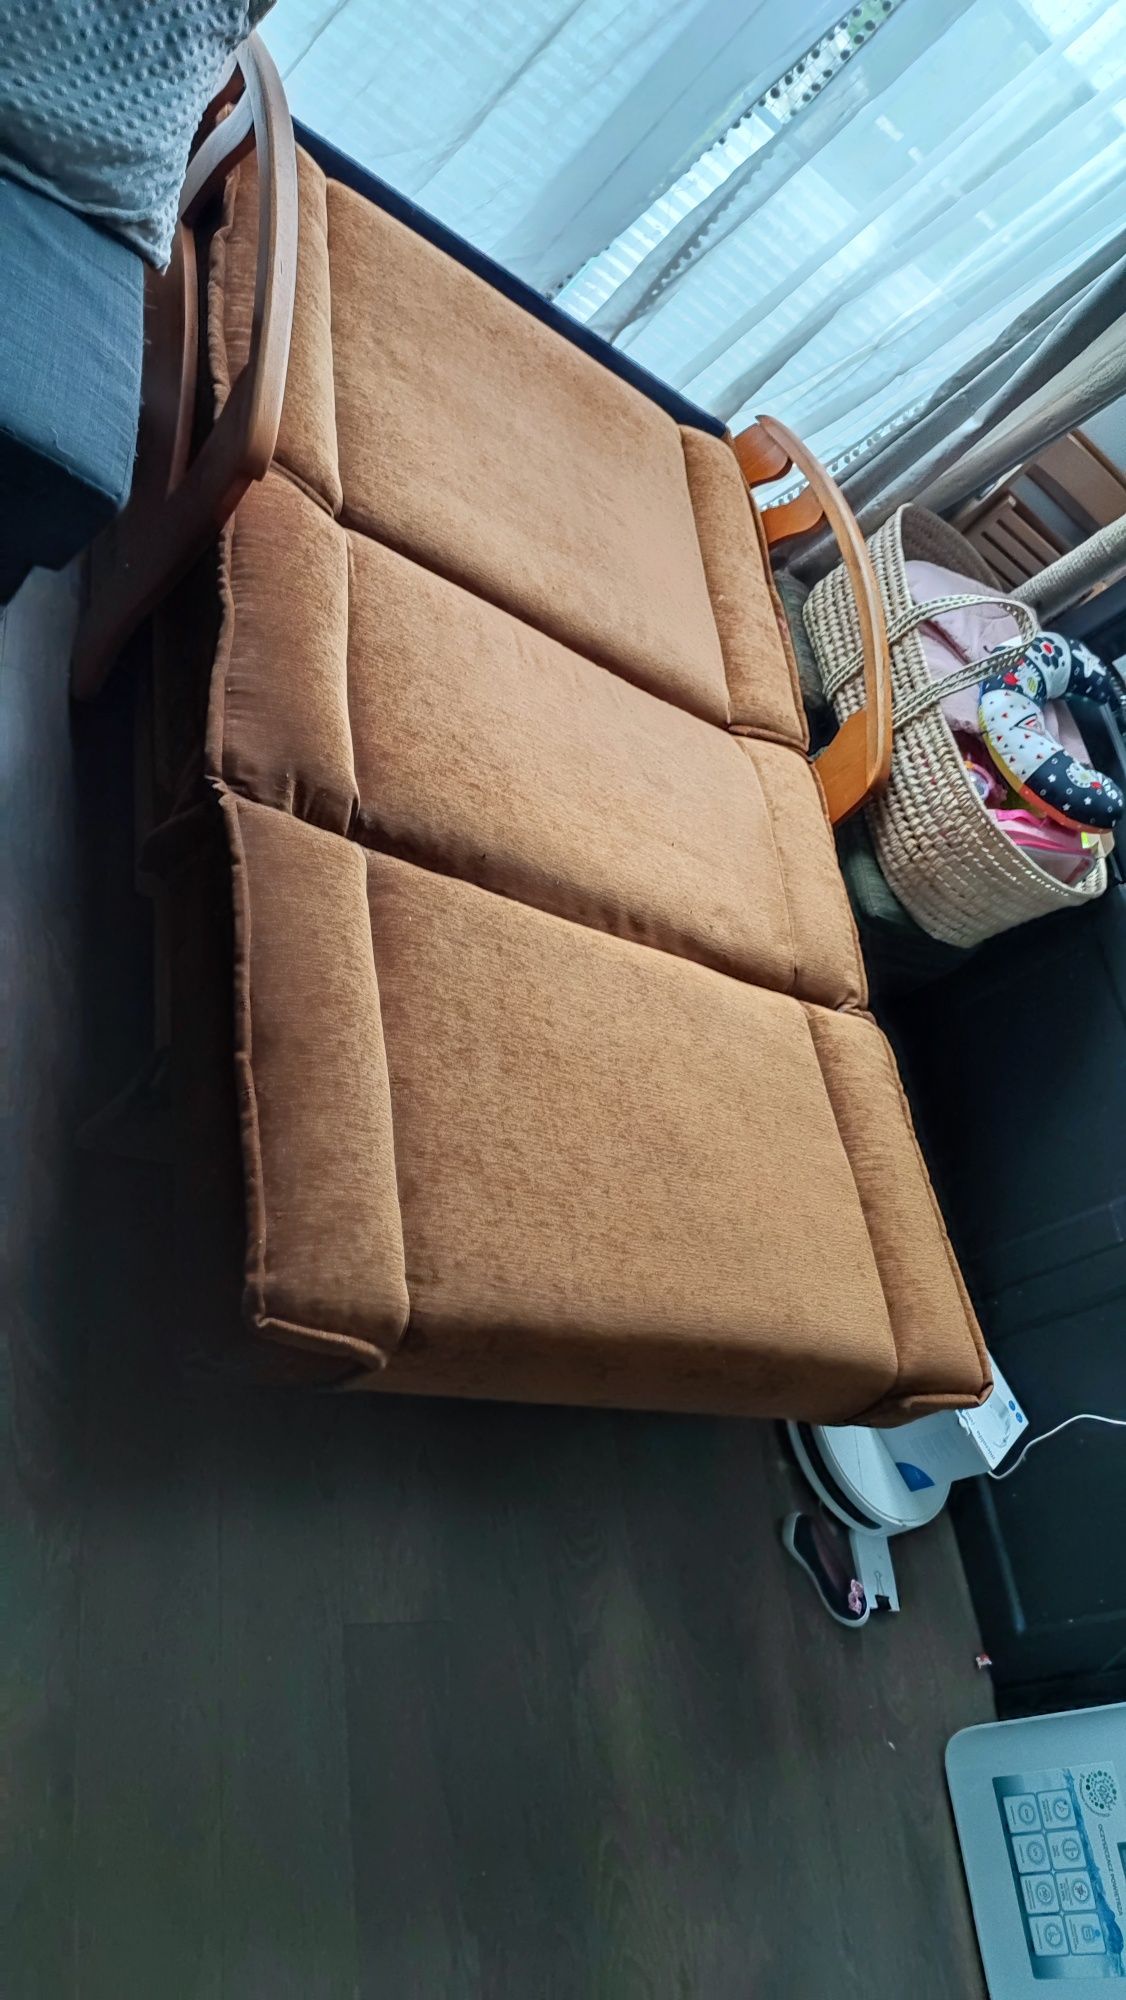 Sofa łóżko rozkładane